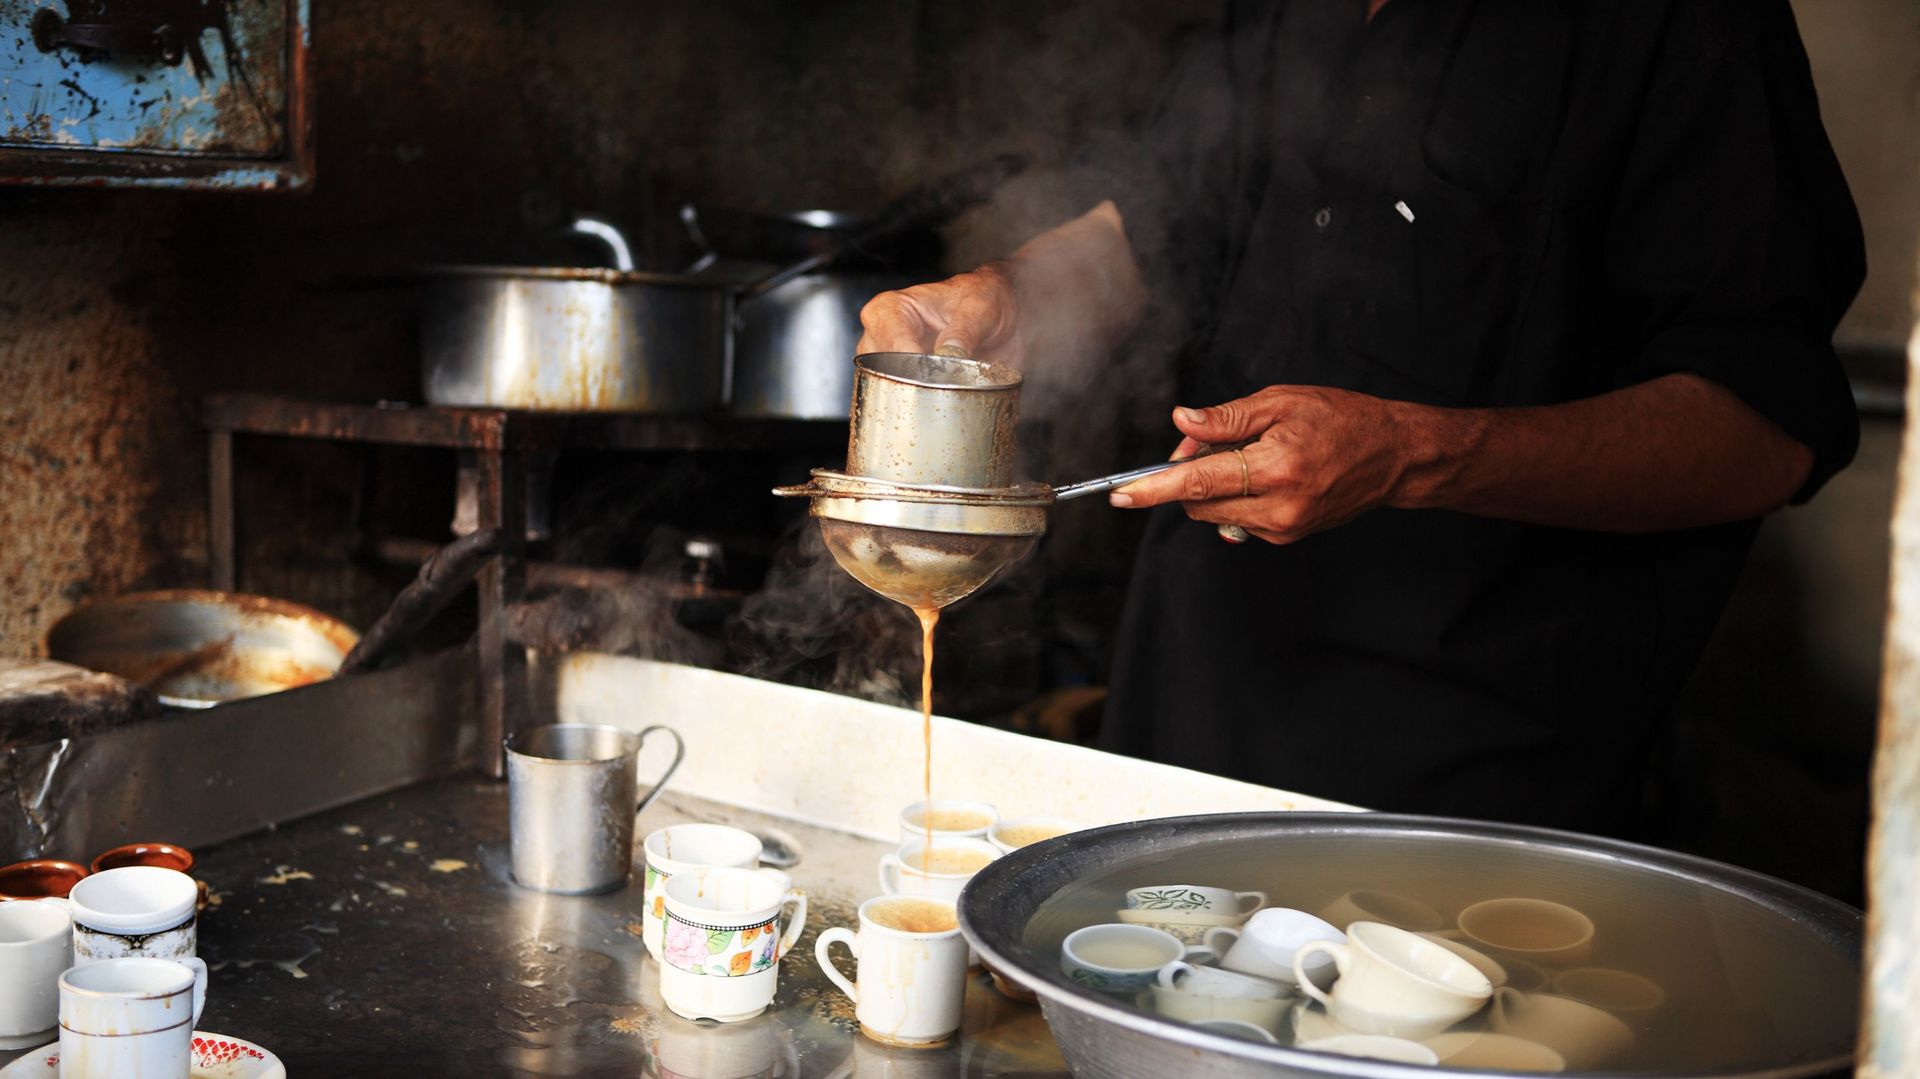 Le Pakistan est le plus grand importateur de thé au monde, selon l’Observatoire de la Complexité Économique.